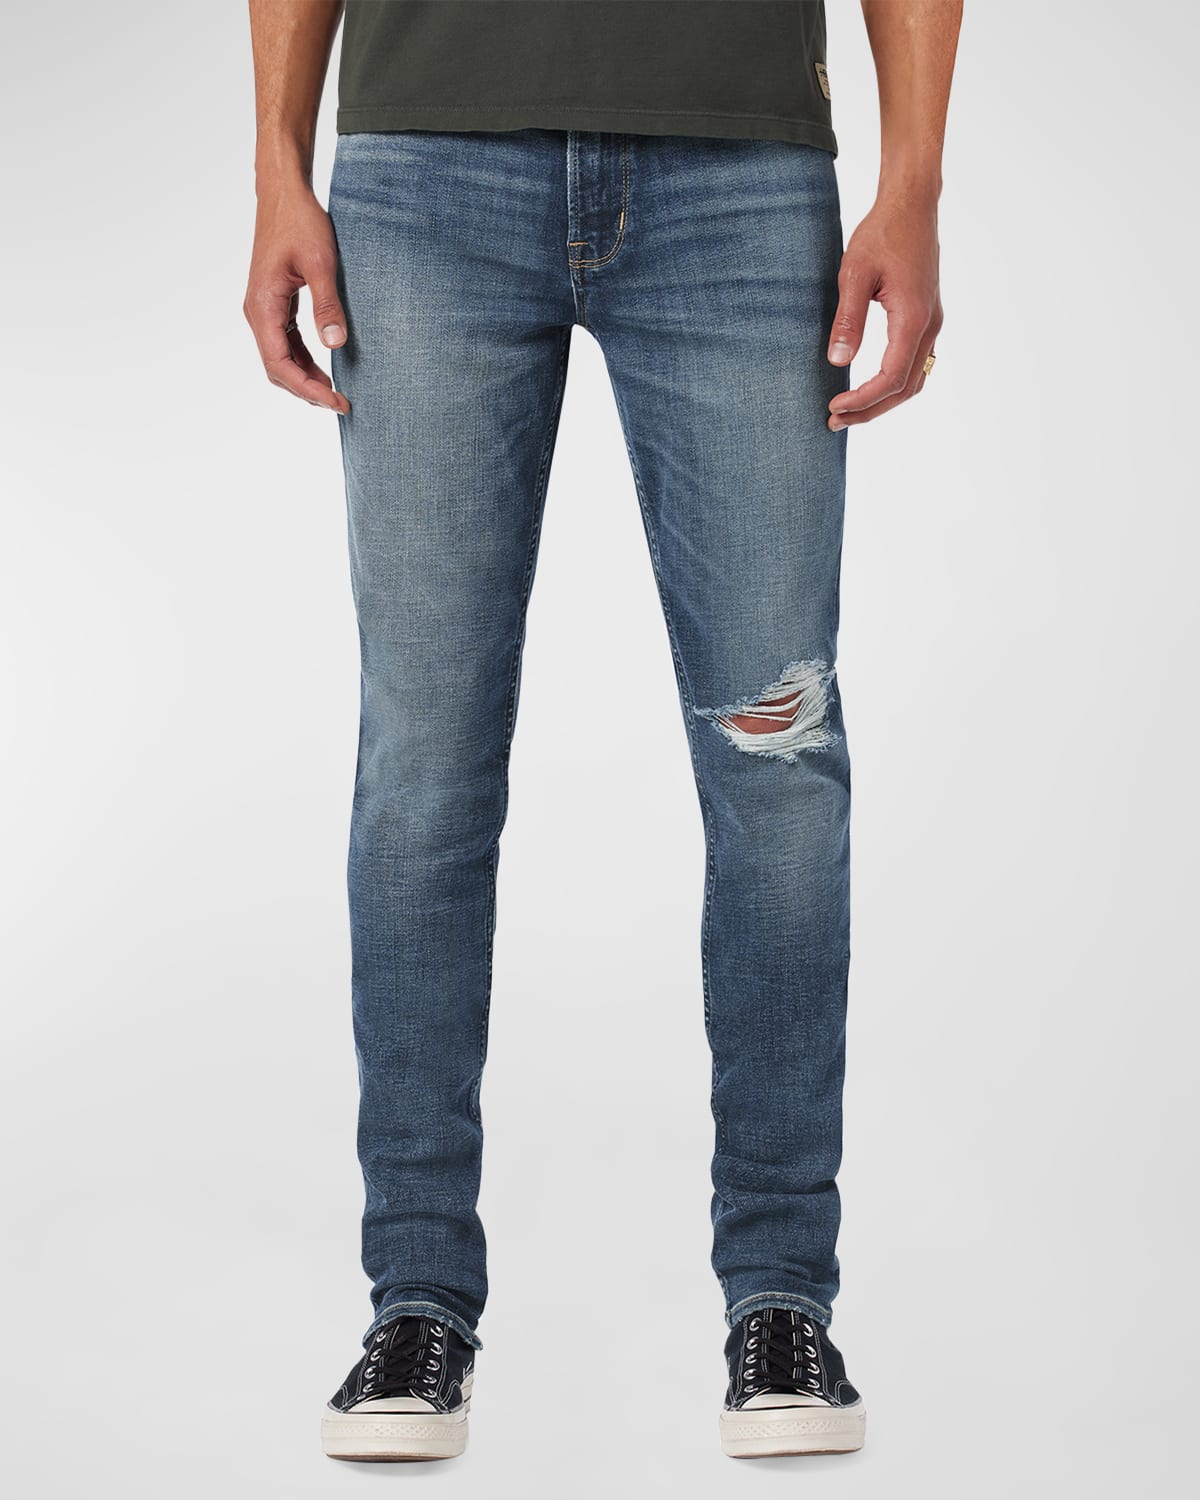 Men's Zack Skinny Jeans